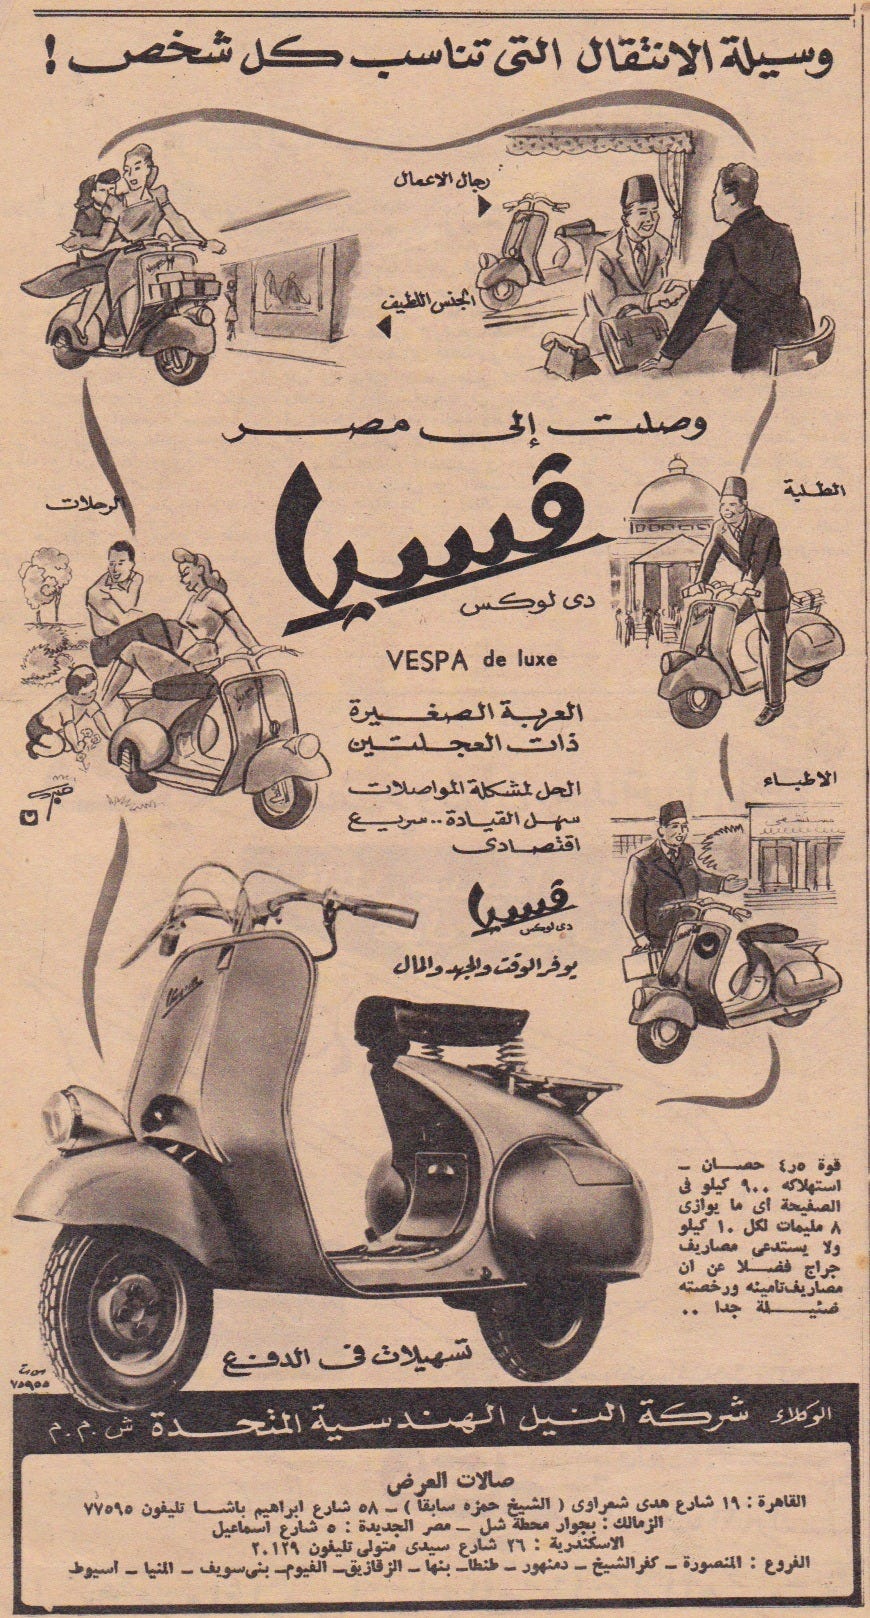 Vespa ad, 1952